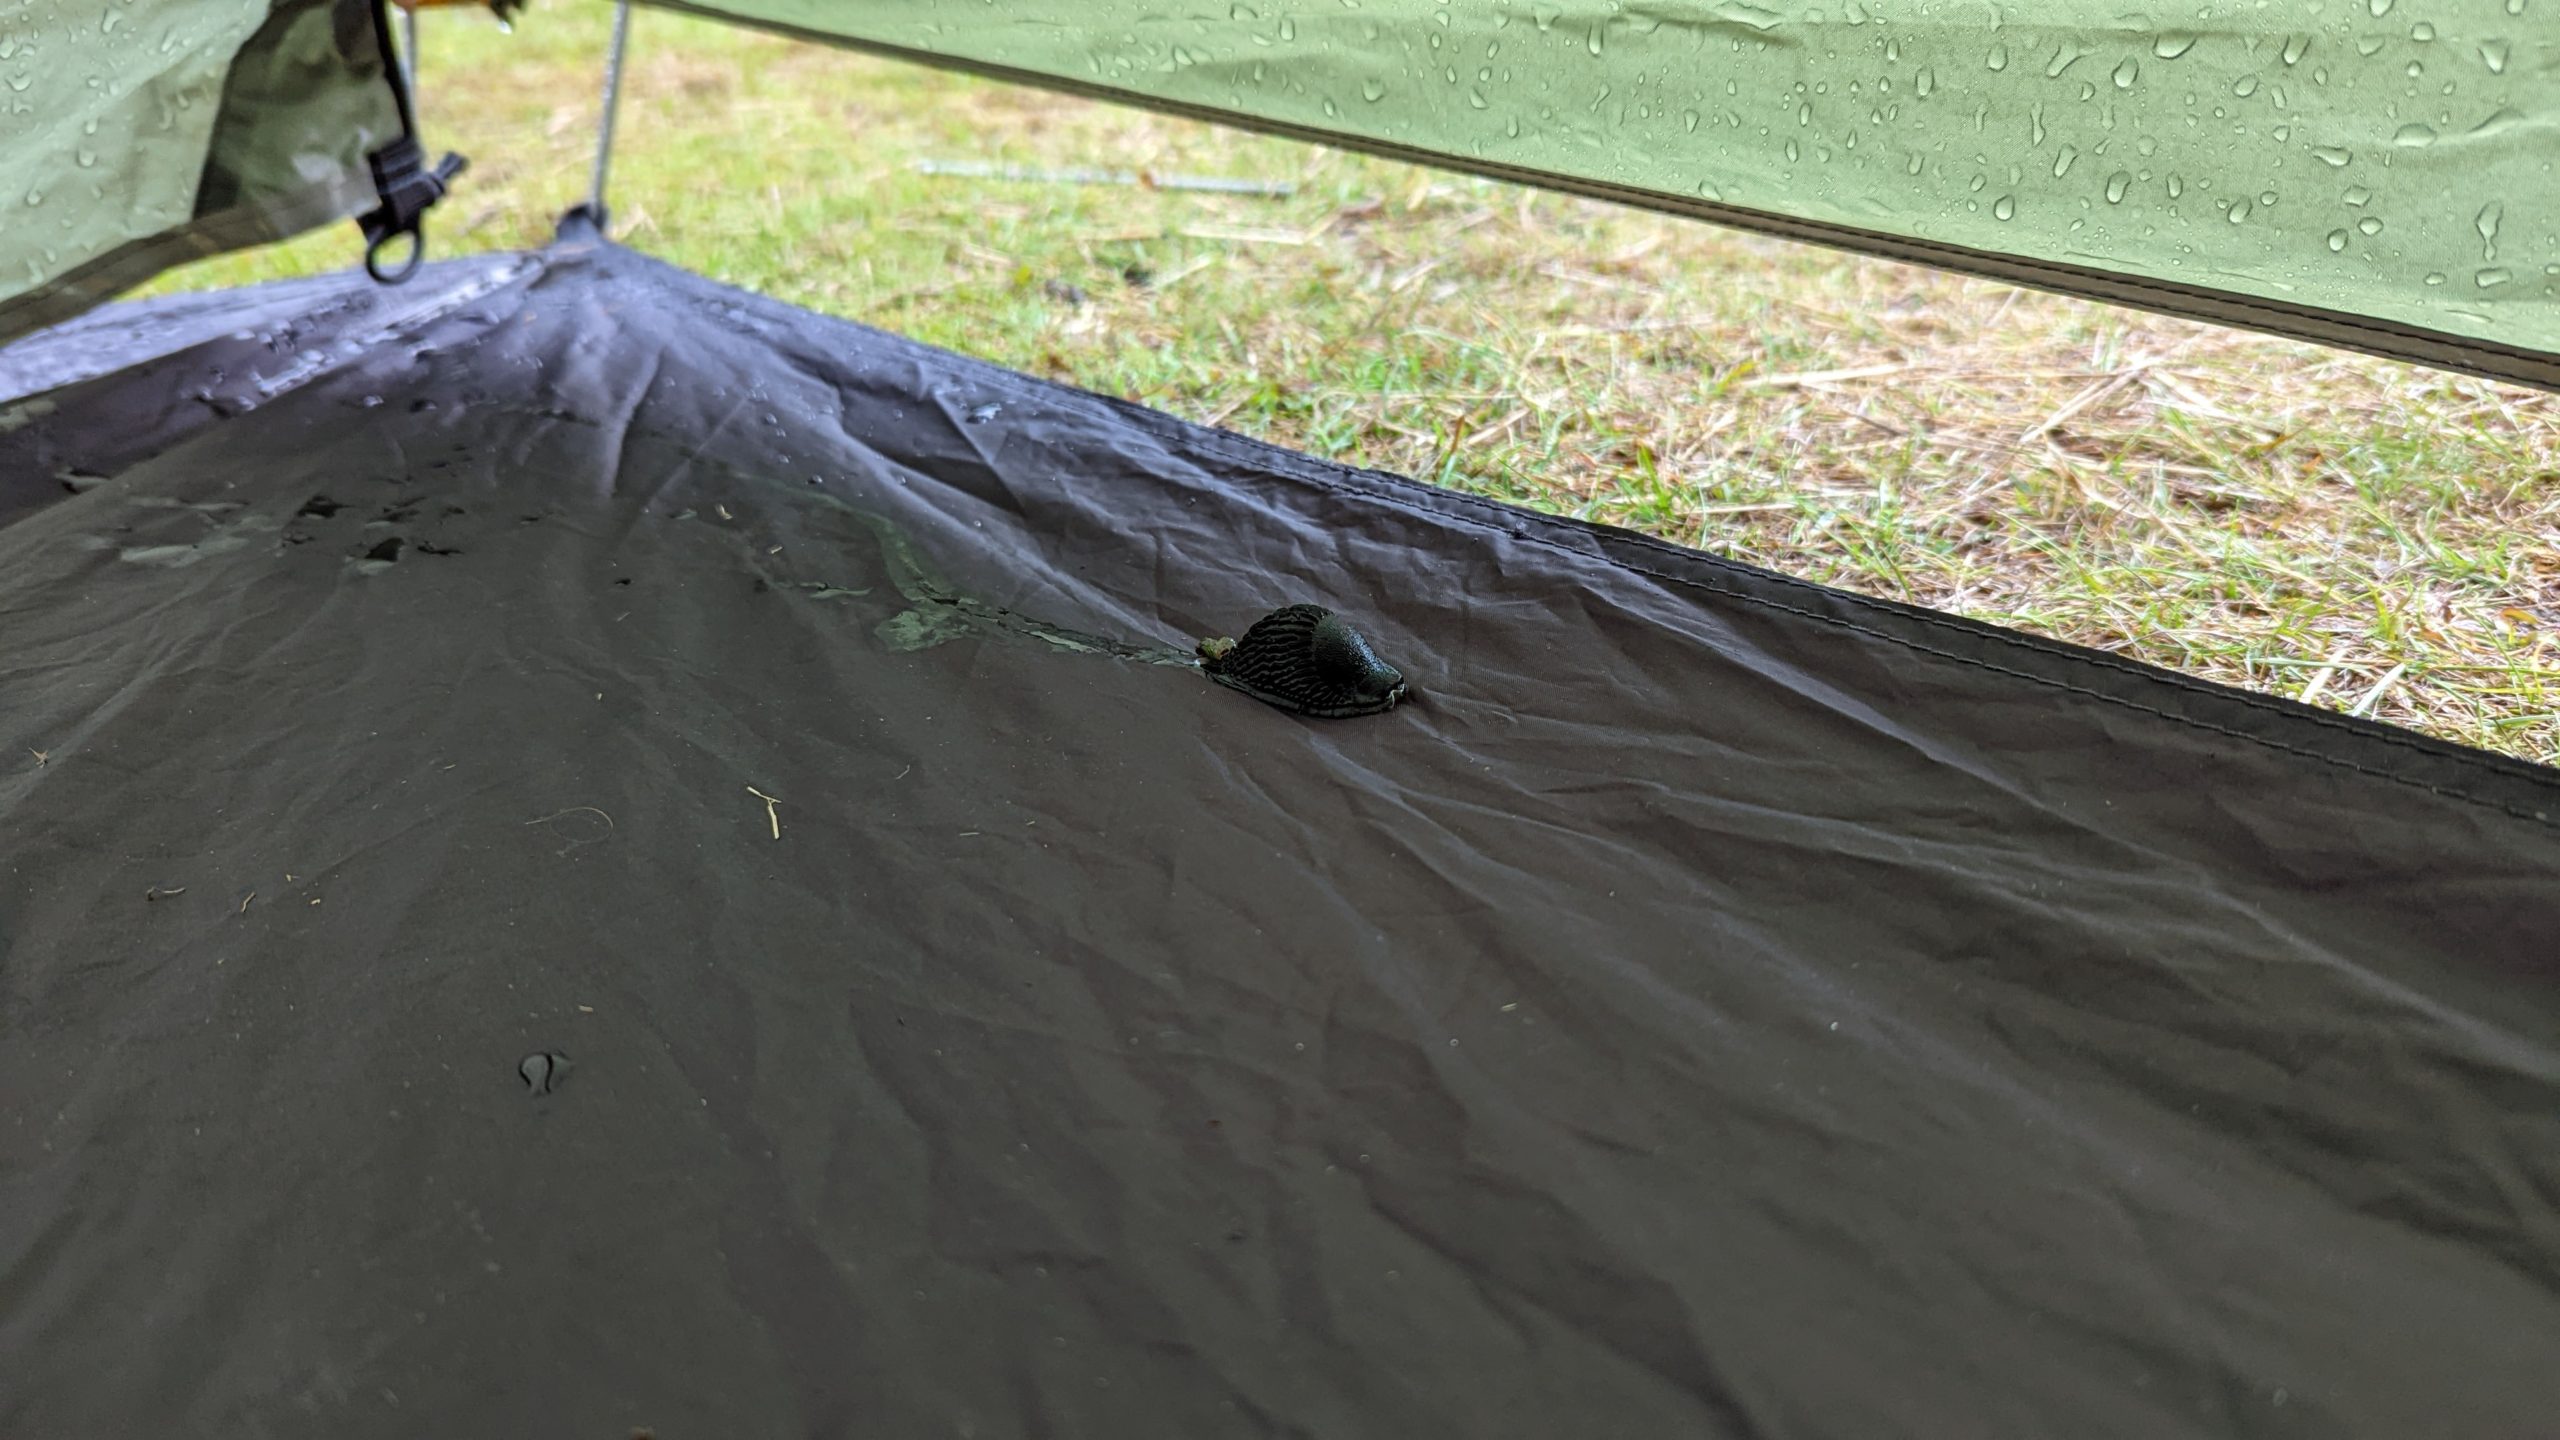 slug in tent porch